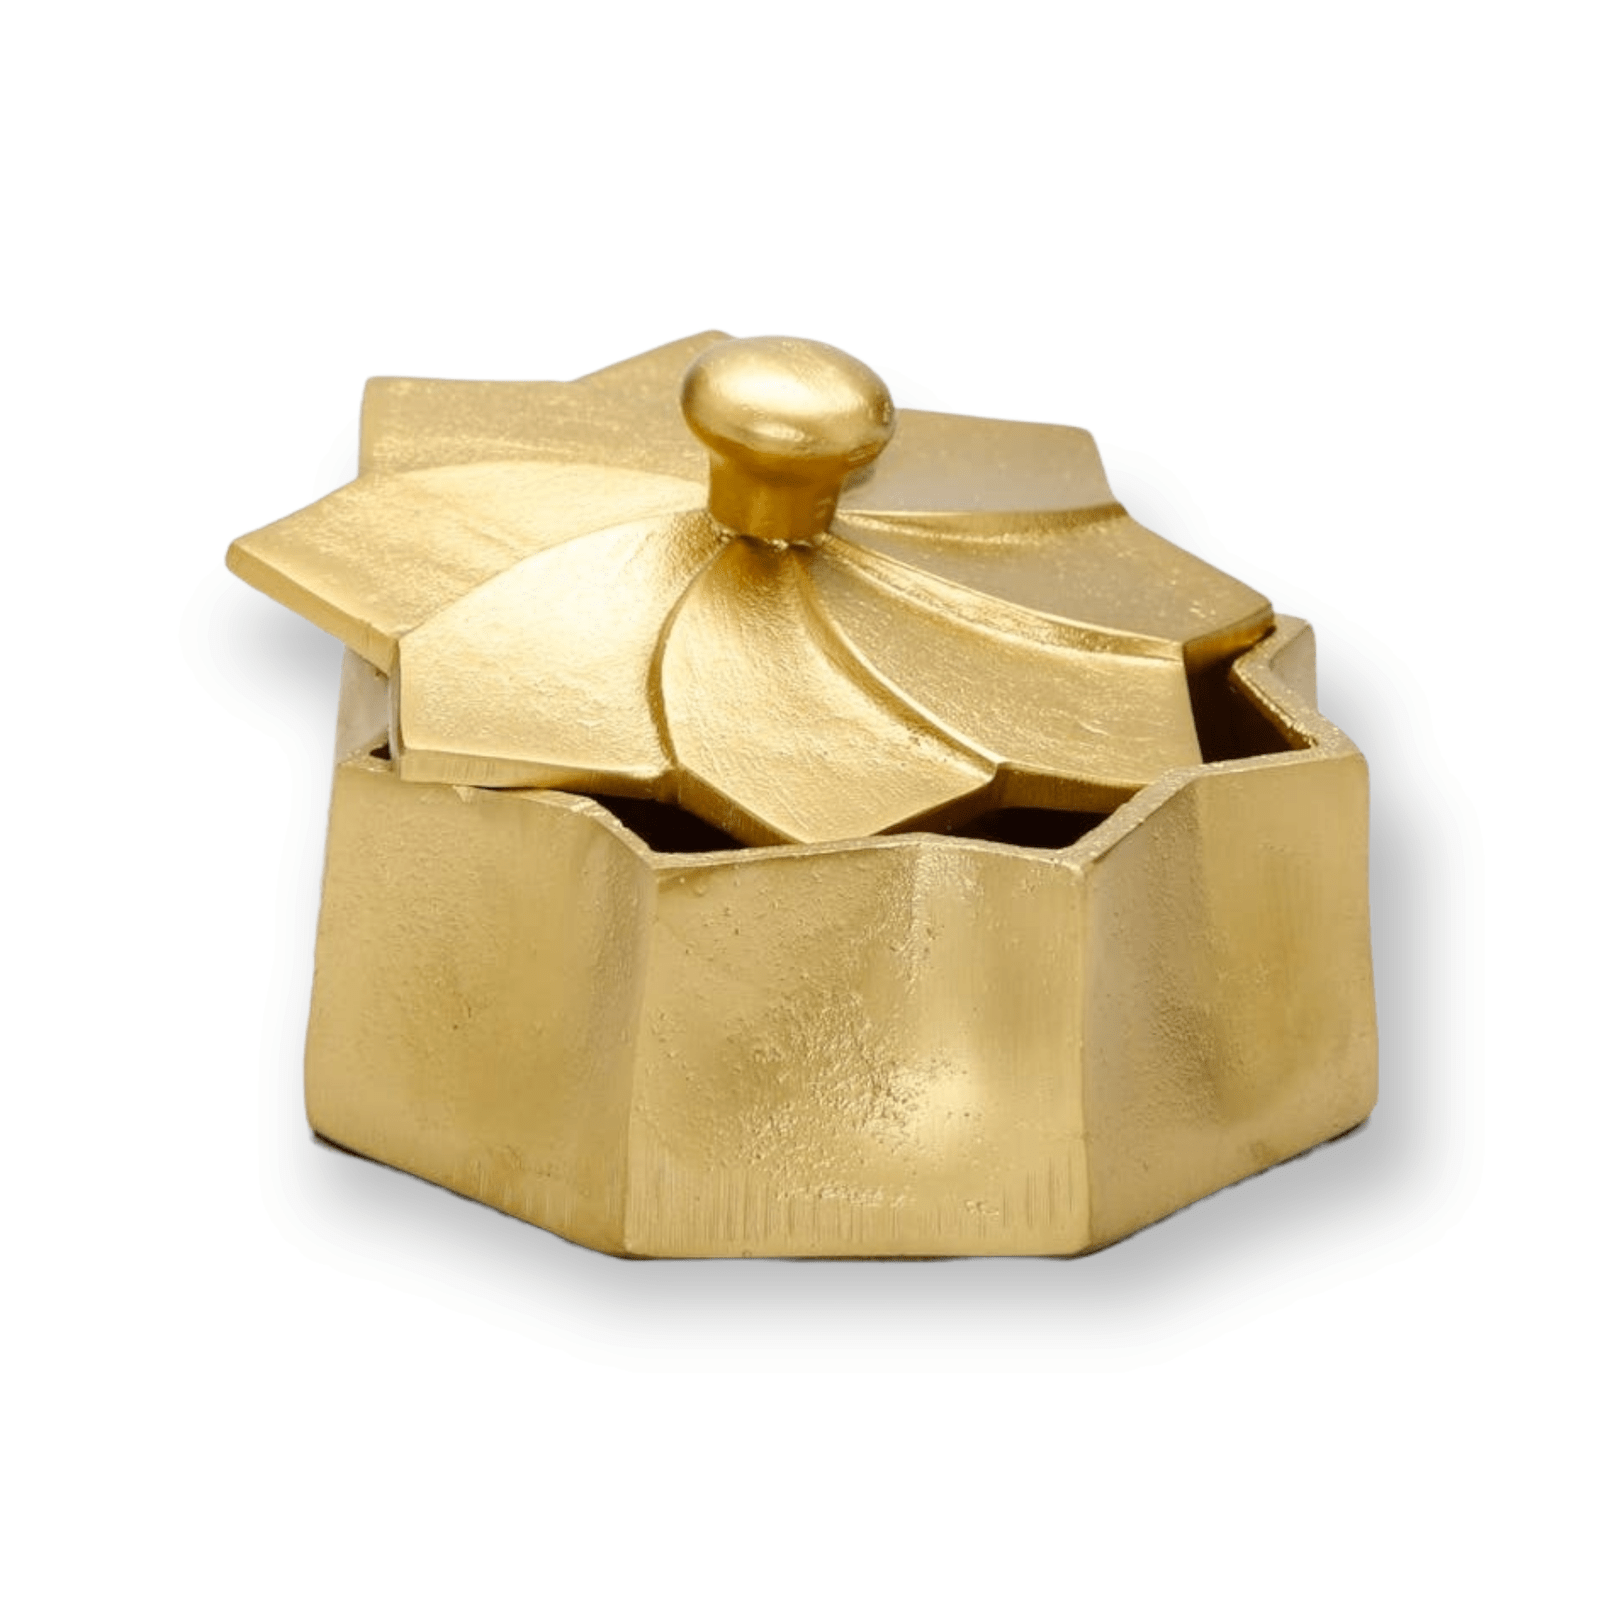 Gold Flower Shaped Decorative Box - Exquisite Designs Home Décor 